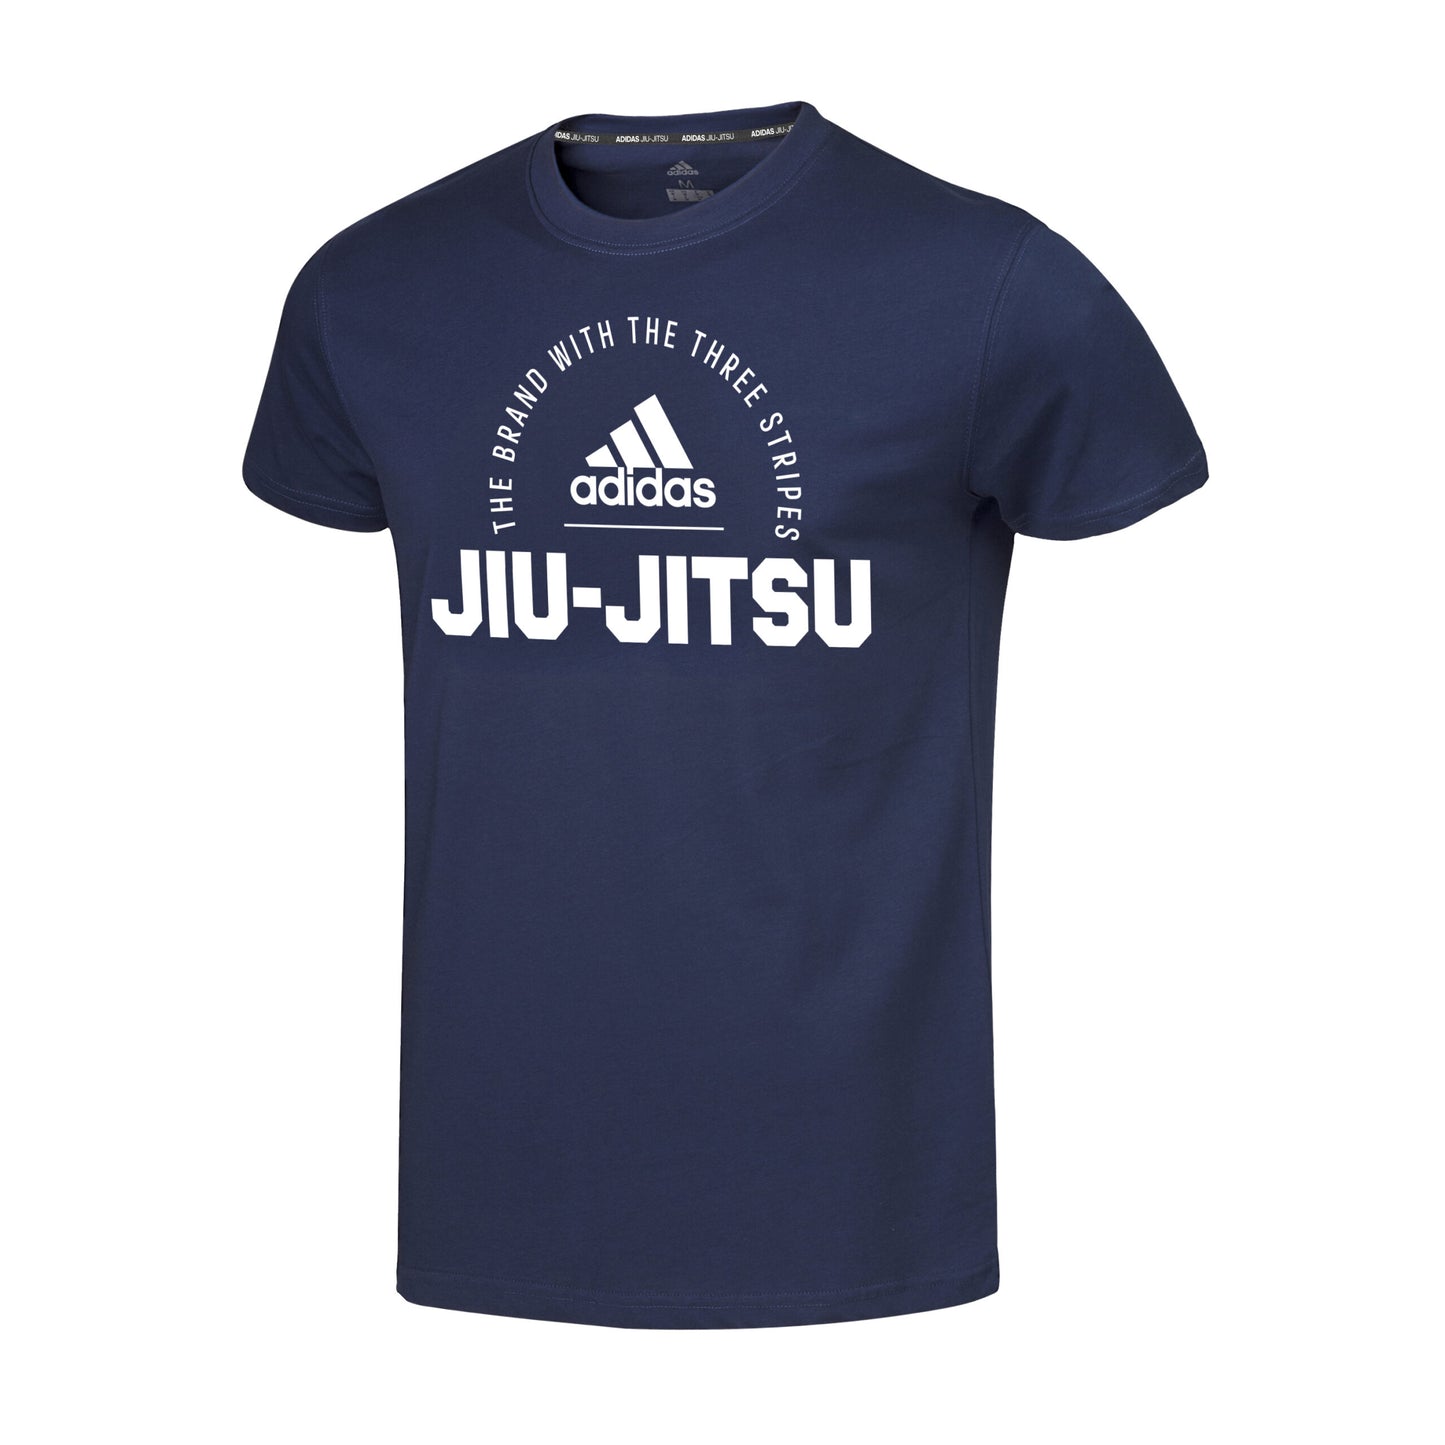 Clts21 Bjj Adidas Community Jiu Jitsu T Shirt Legend Ink 03